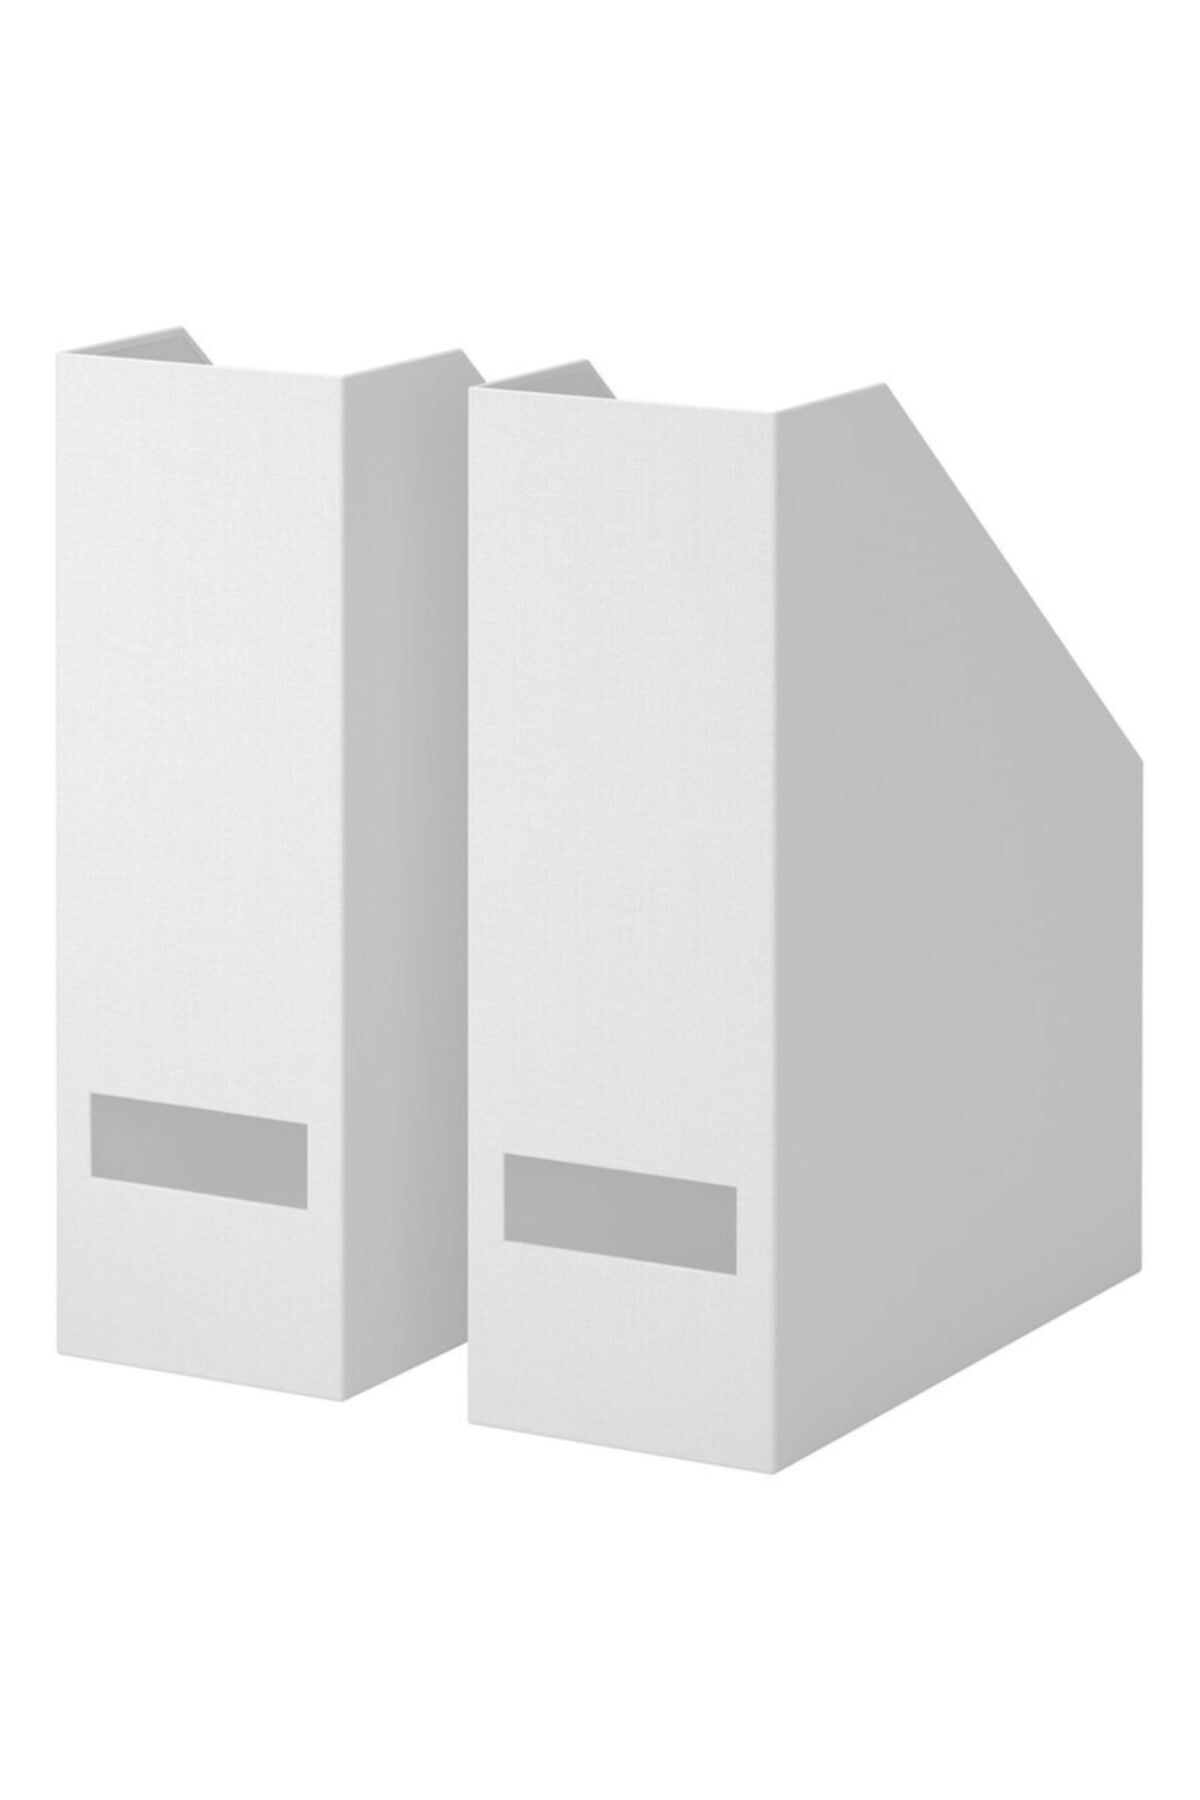 IKEA Tjena Beyaz Kutu Klasör Dosyalık Magazinlik Evrak Dergi Dosyası 2 Adet Beyaz